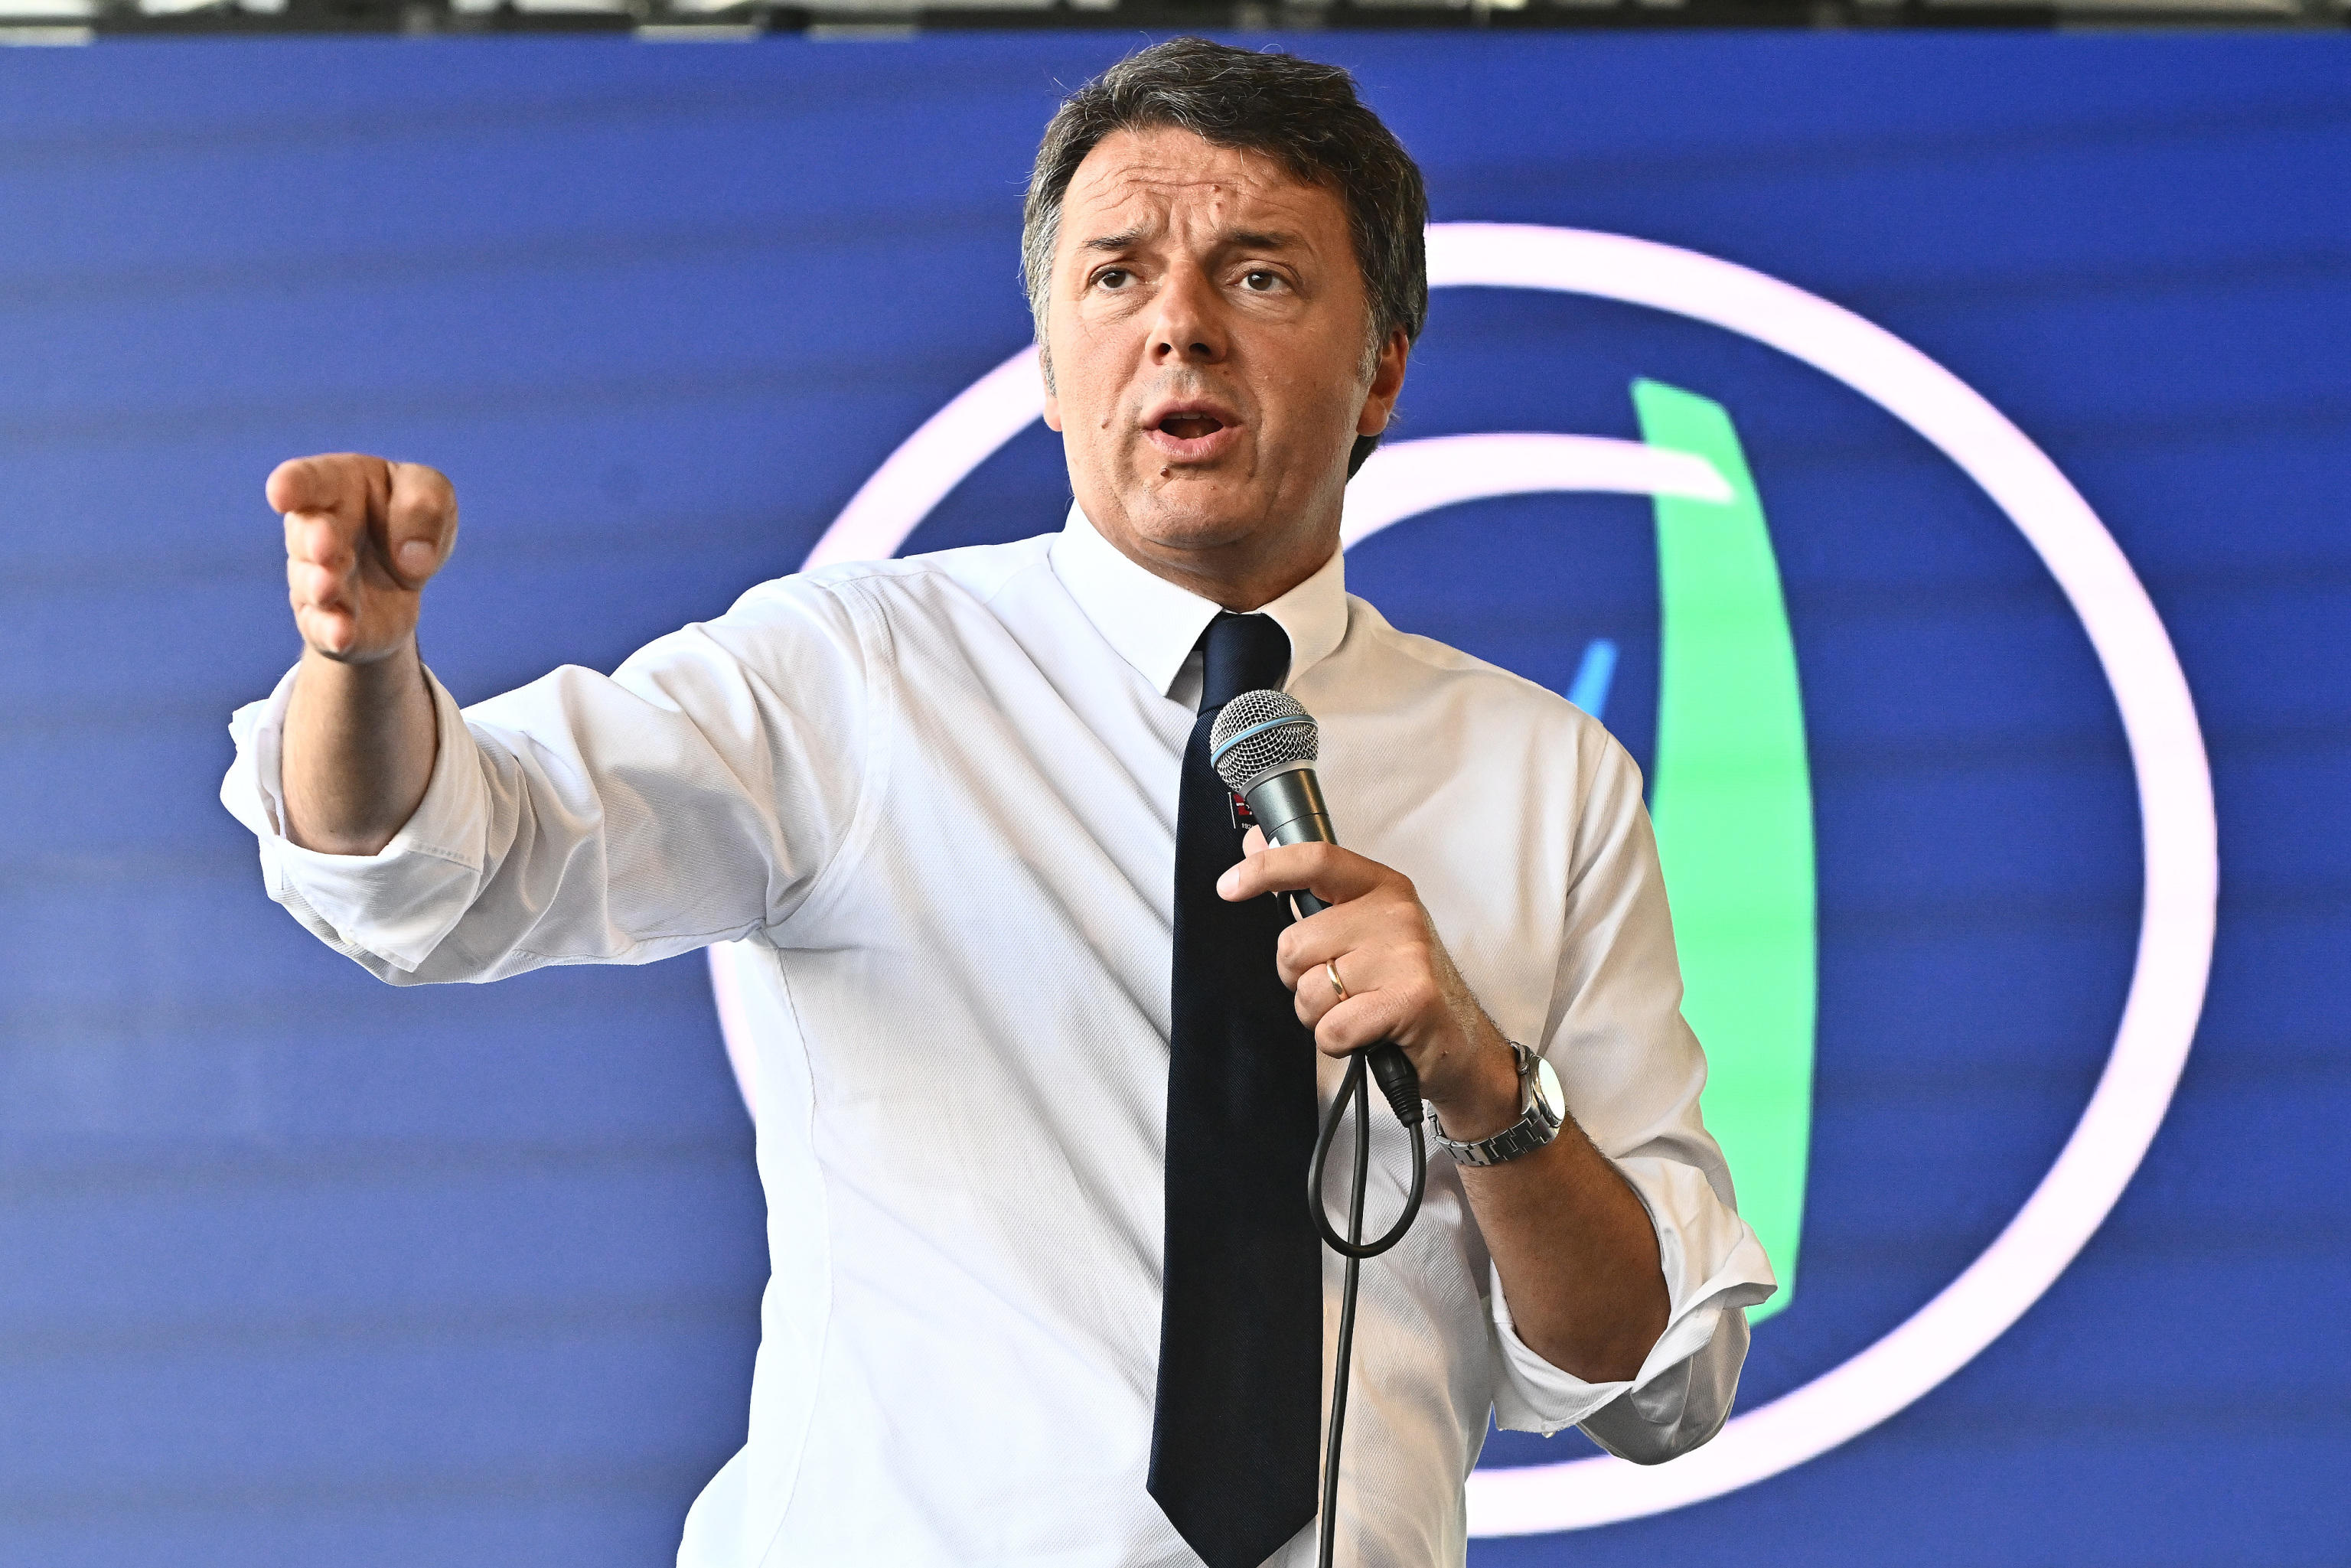 Le condizioni di Renzi a Calenda: «Non sono una mammoletta: prima l’accordo poi le liste. Letta? Ha fatto una frittata»